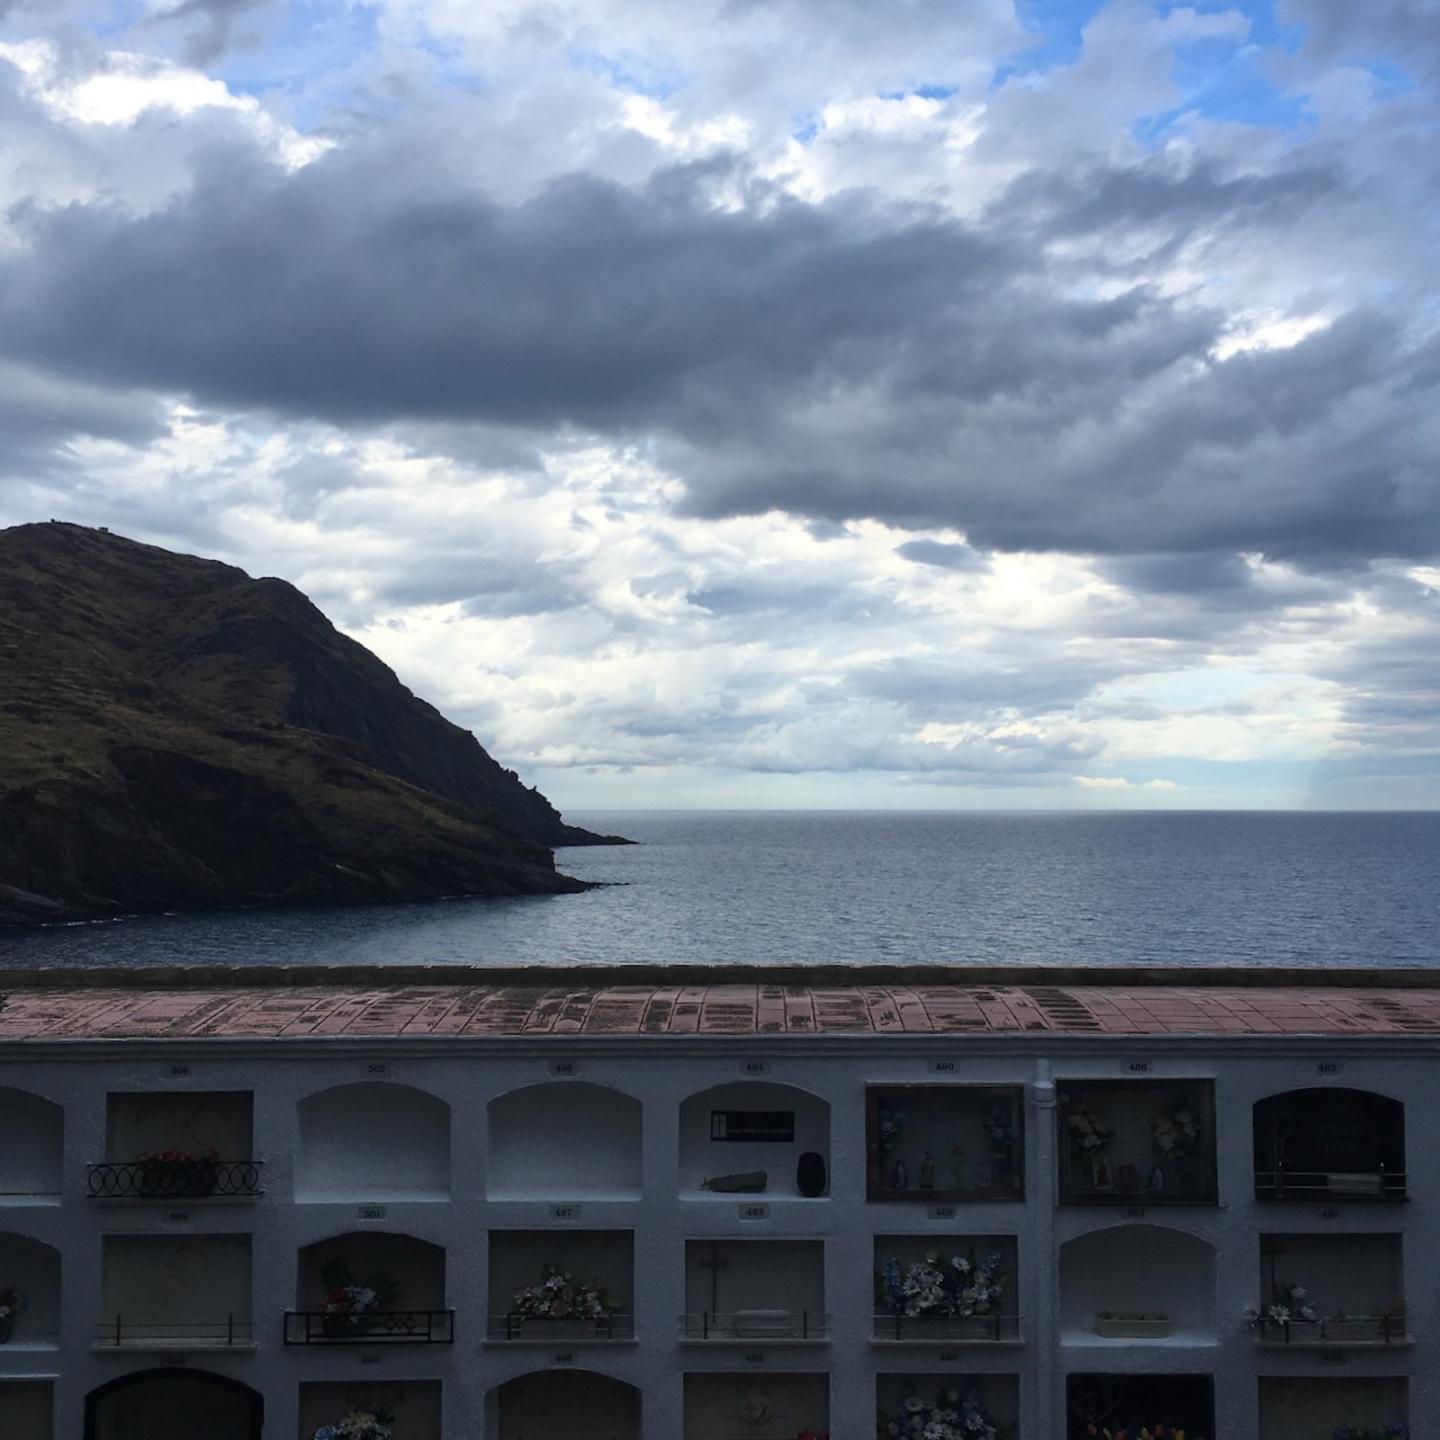 Cimetière de Port-Bou avec vue sur la mer Méditerranée